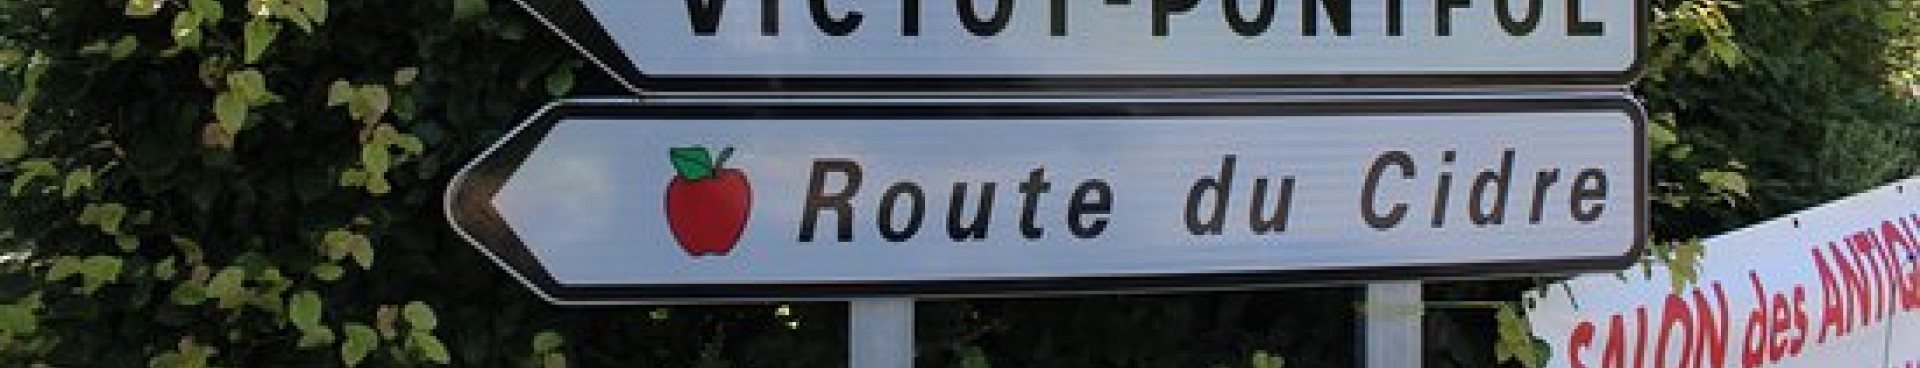 La route du cidre, circuit situé en Normandie, dans le Calvados, près du Castel Camping Le Brévedent